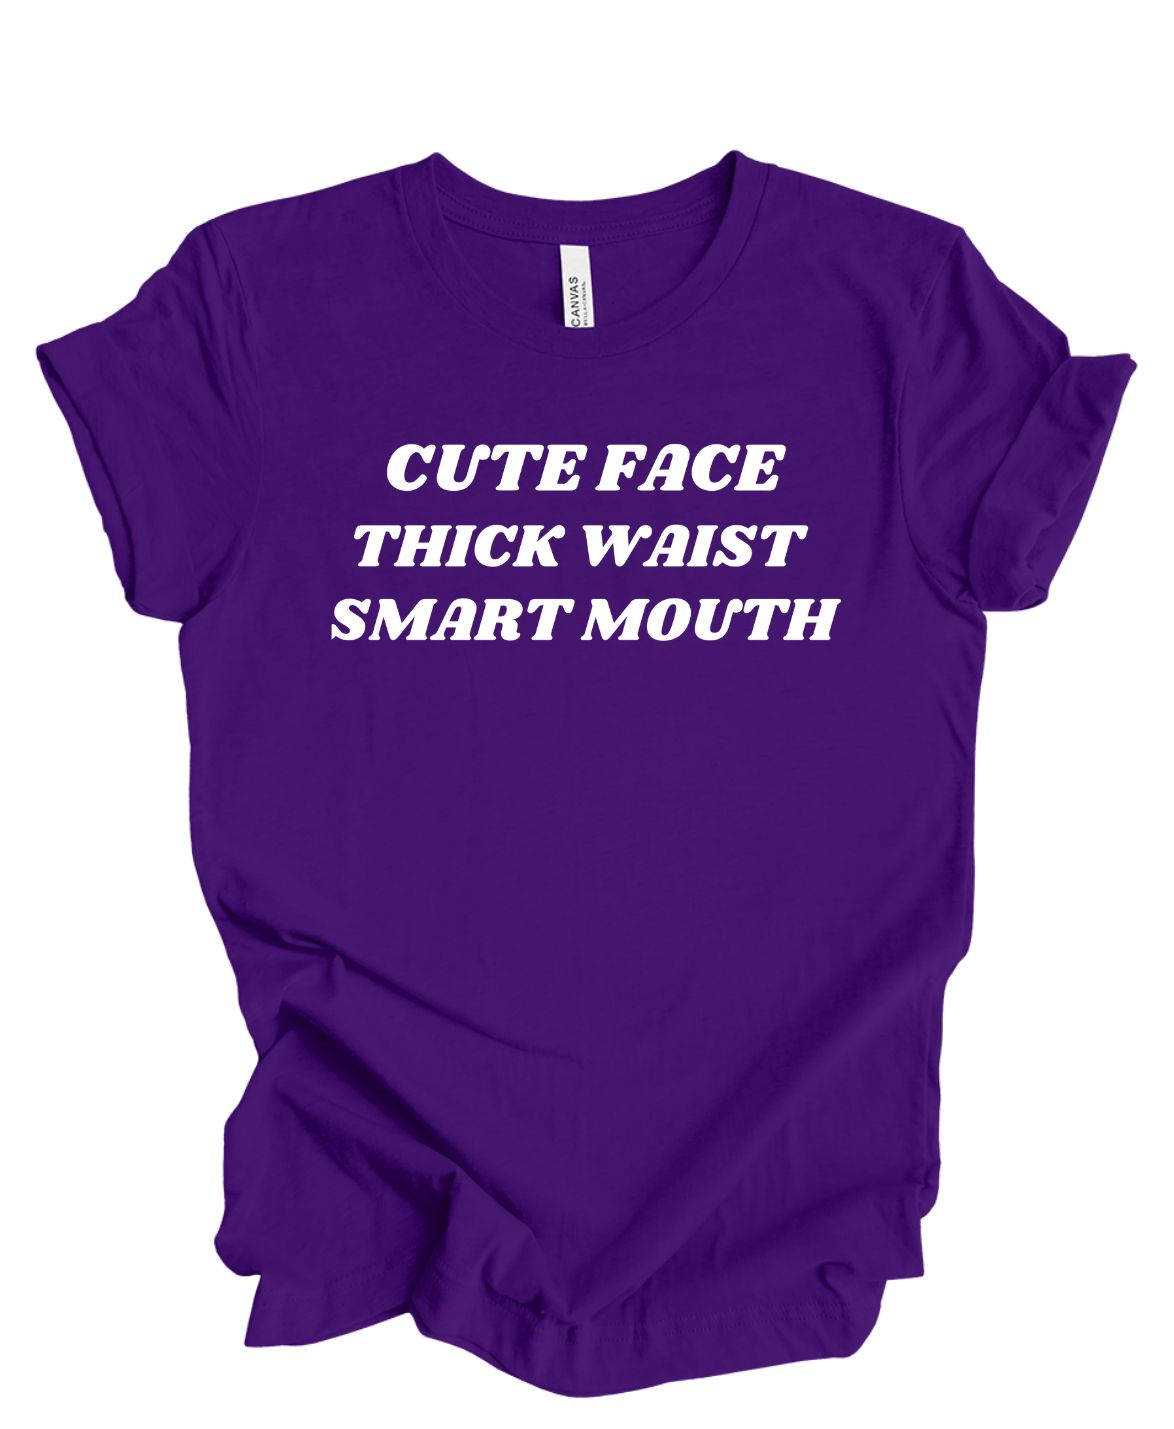 Cute Face ,Thick Waist, Smart Mouth T-Shirt